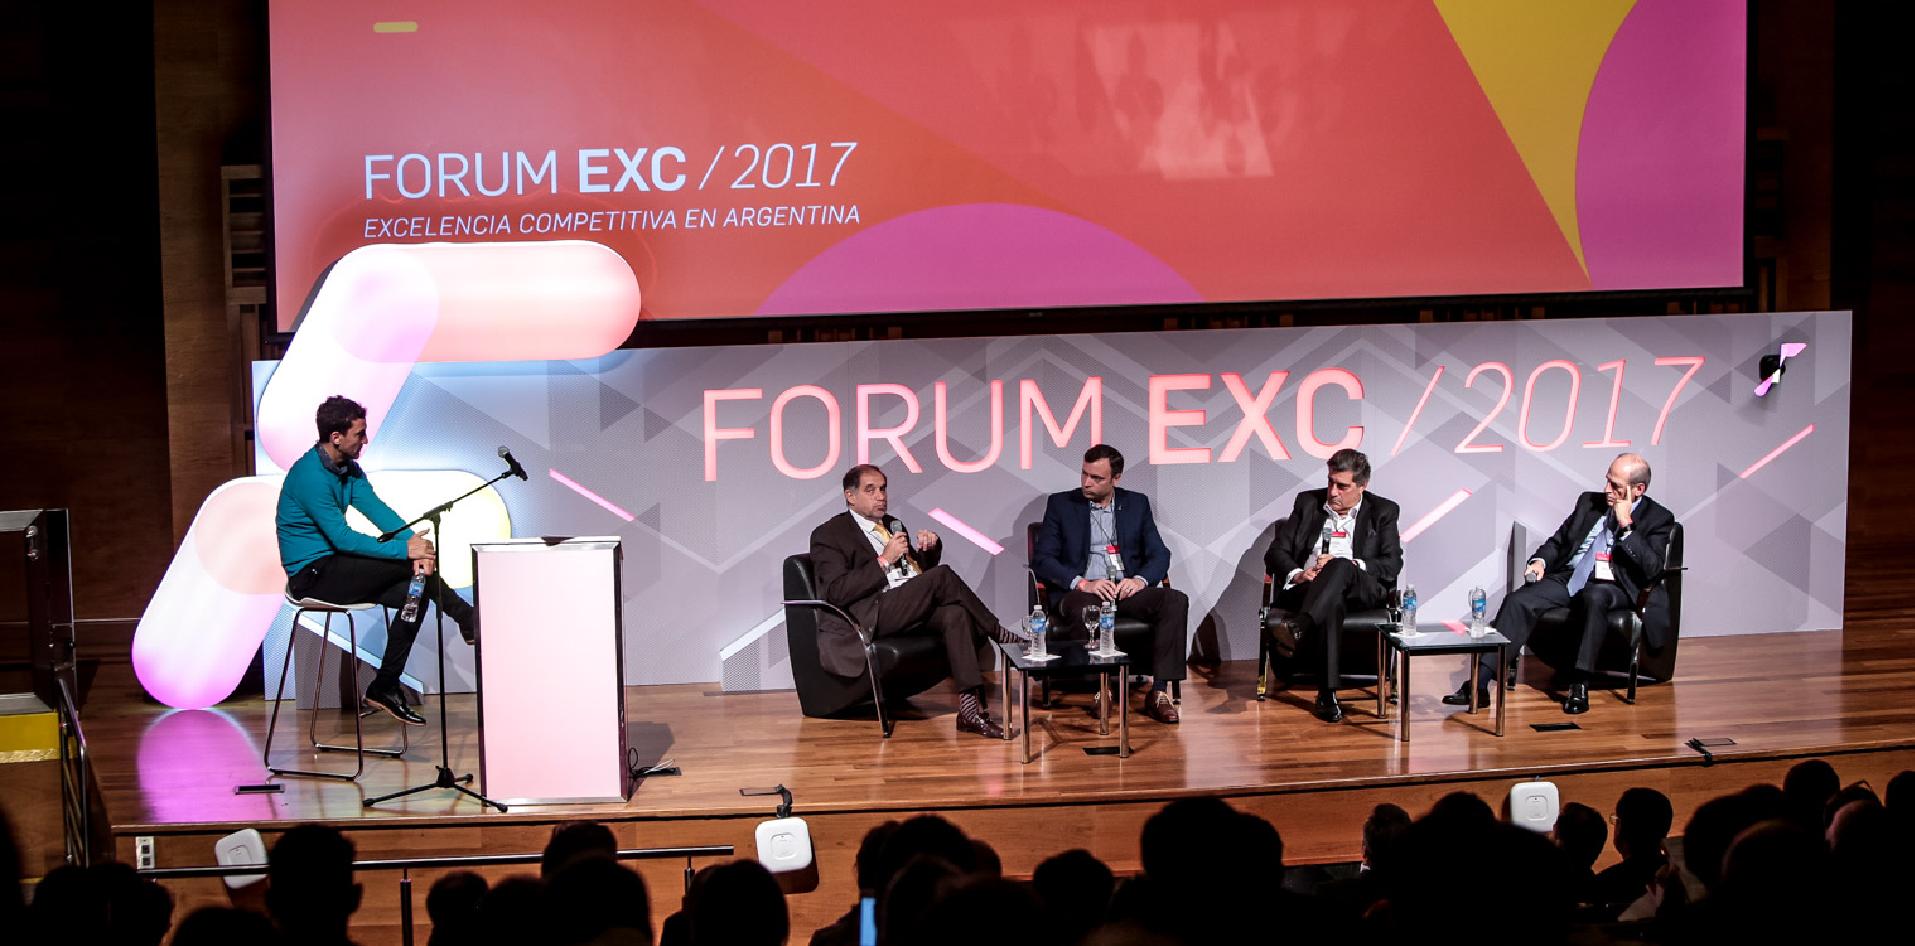 INTI, Forum EXC, Juan Pedro Córica, competitividad, industria, innovación